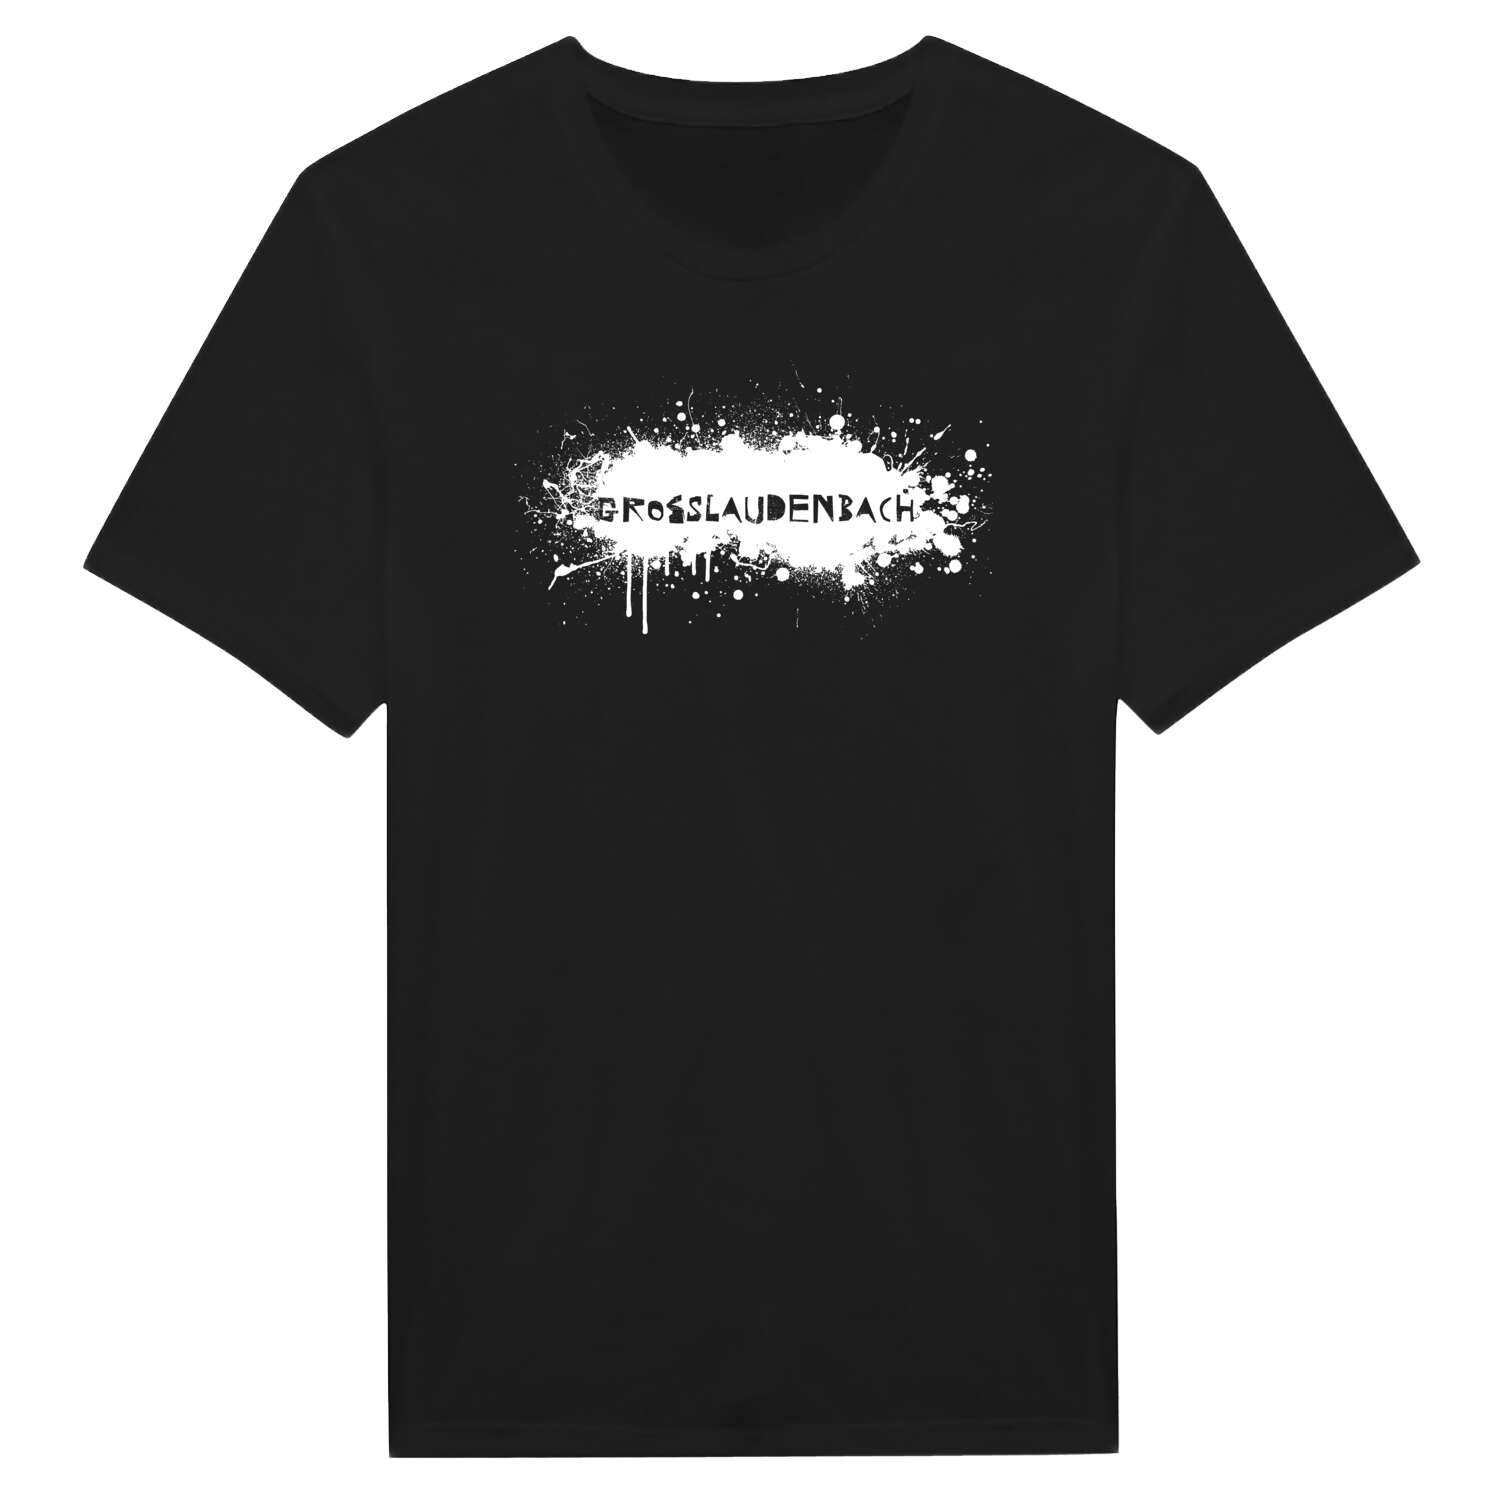 Großlaudenbach T-Shirt »Paint Splash Punk«